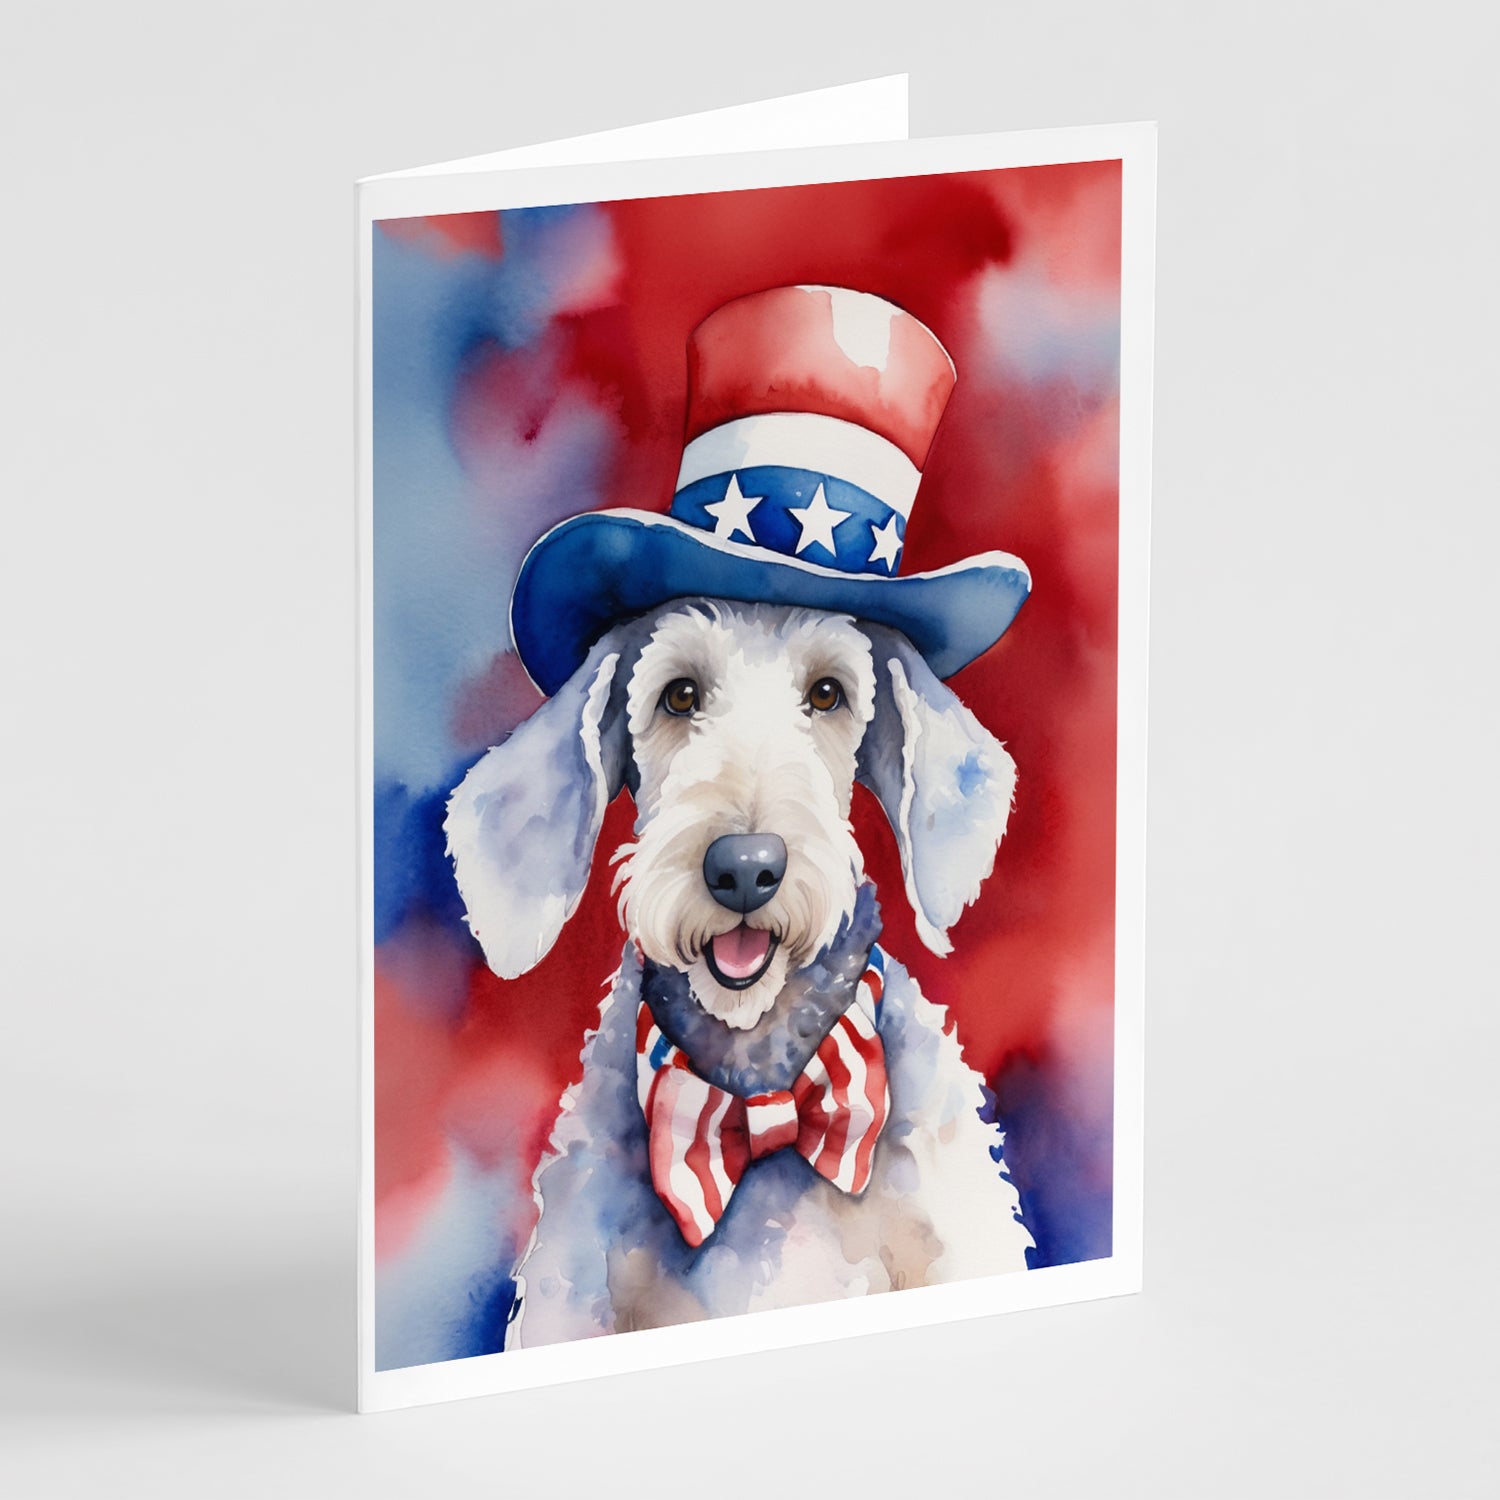 Buy this Bedlington Terrier Patriotic American Greeting Cards Pack of 8